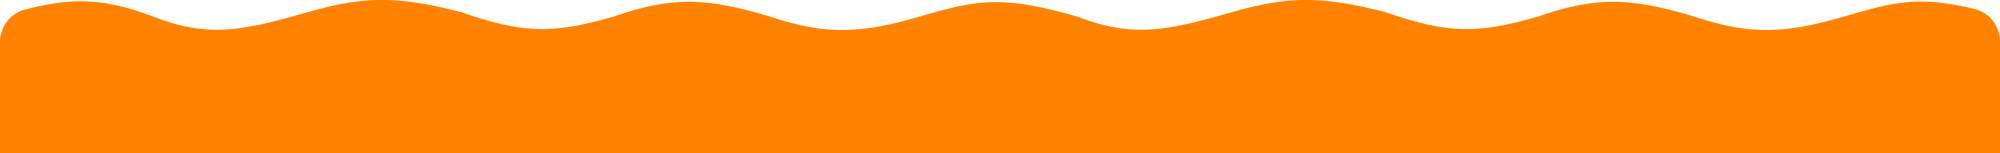 BG_Orange